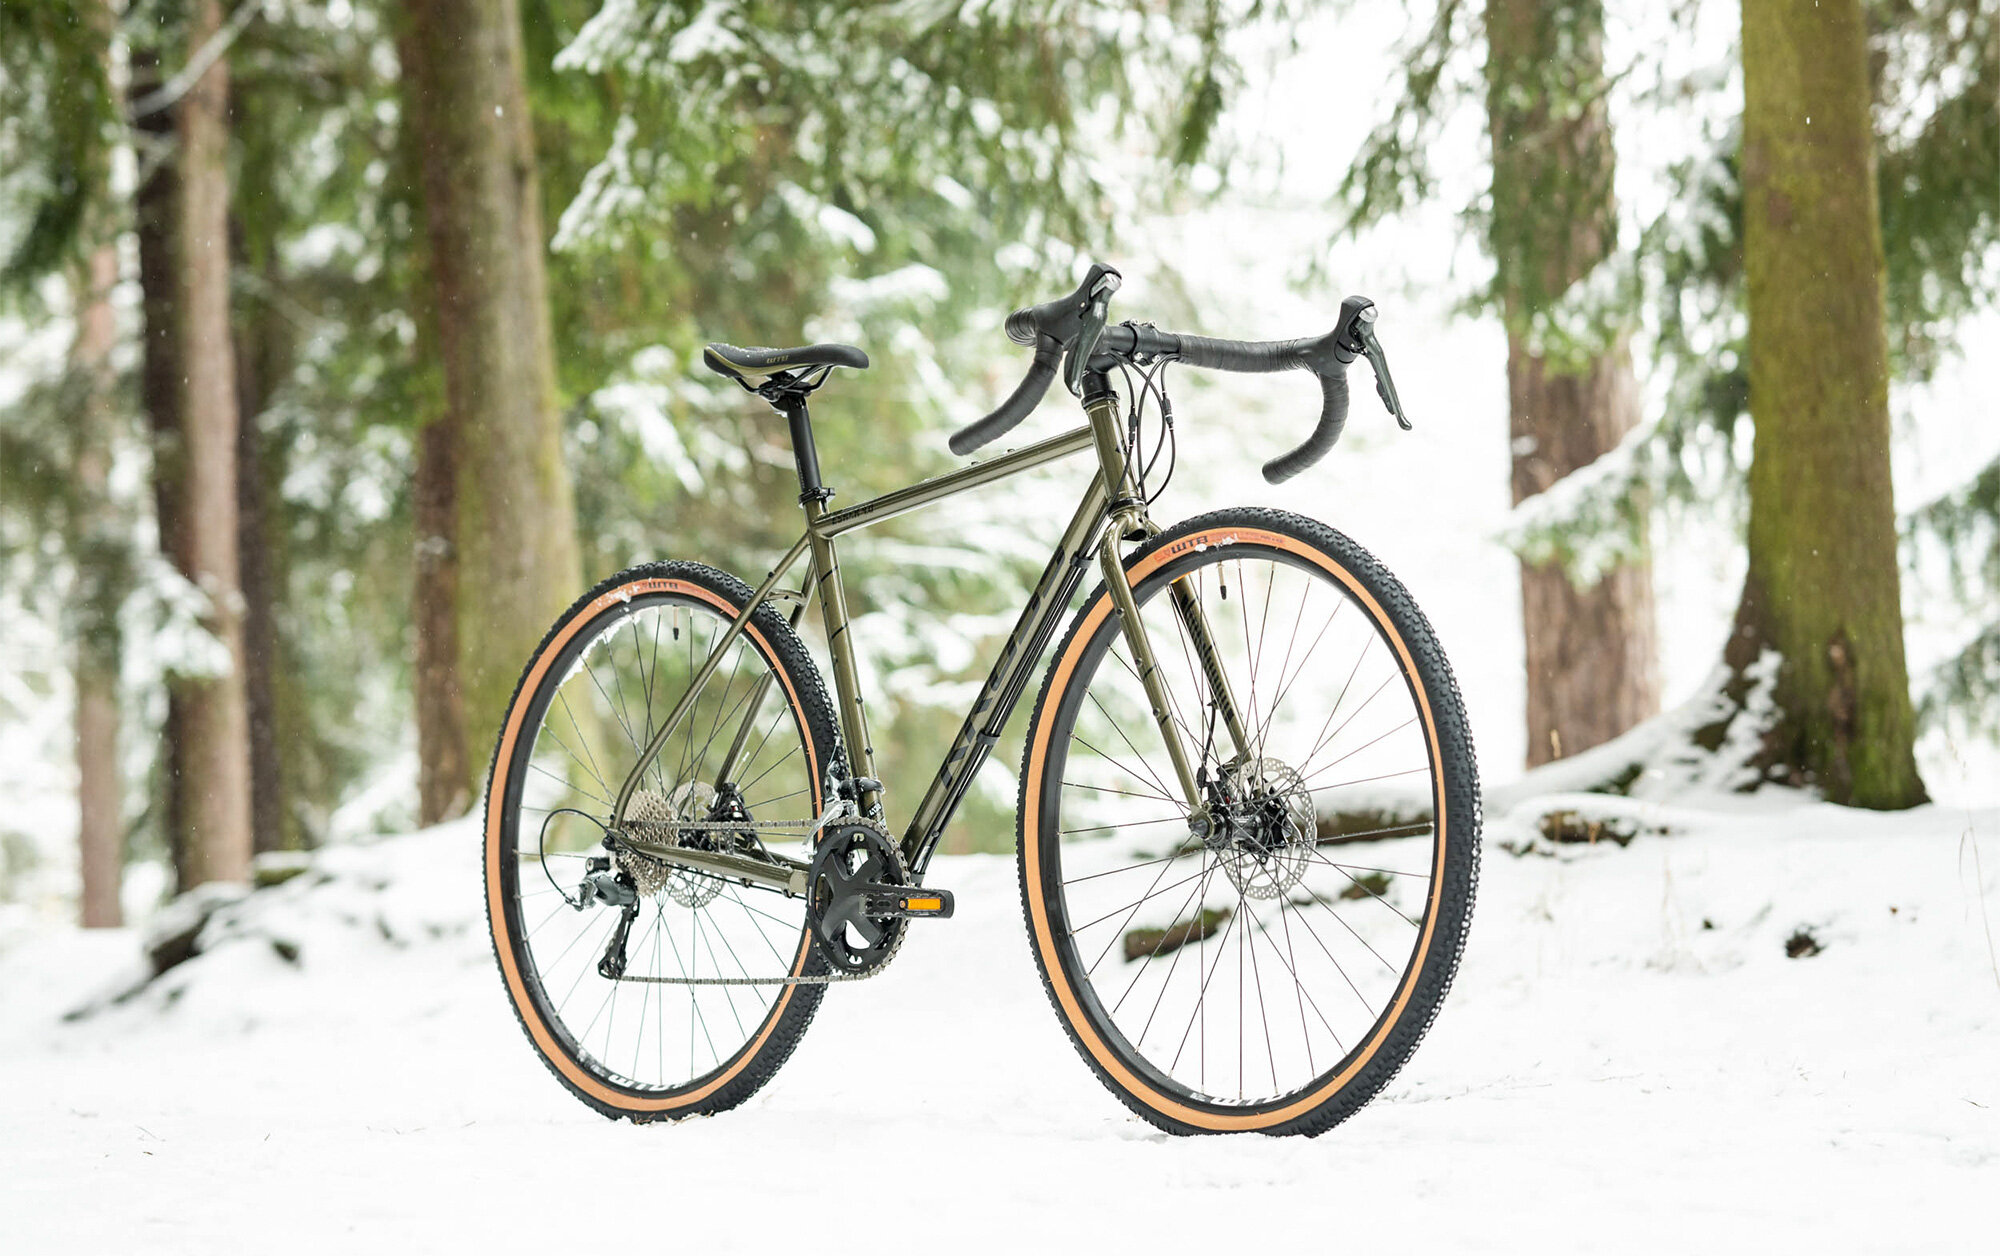 Zima - idealny czas na upgrade sprzętu rowerowego>>